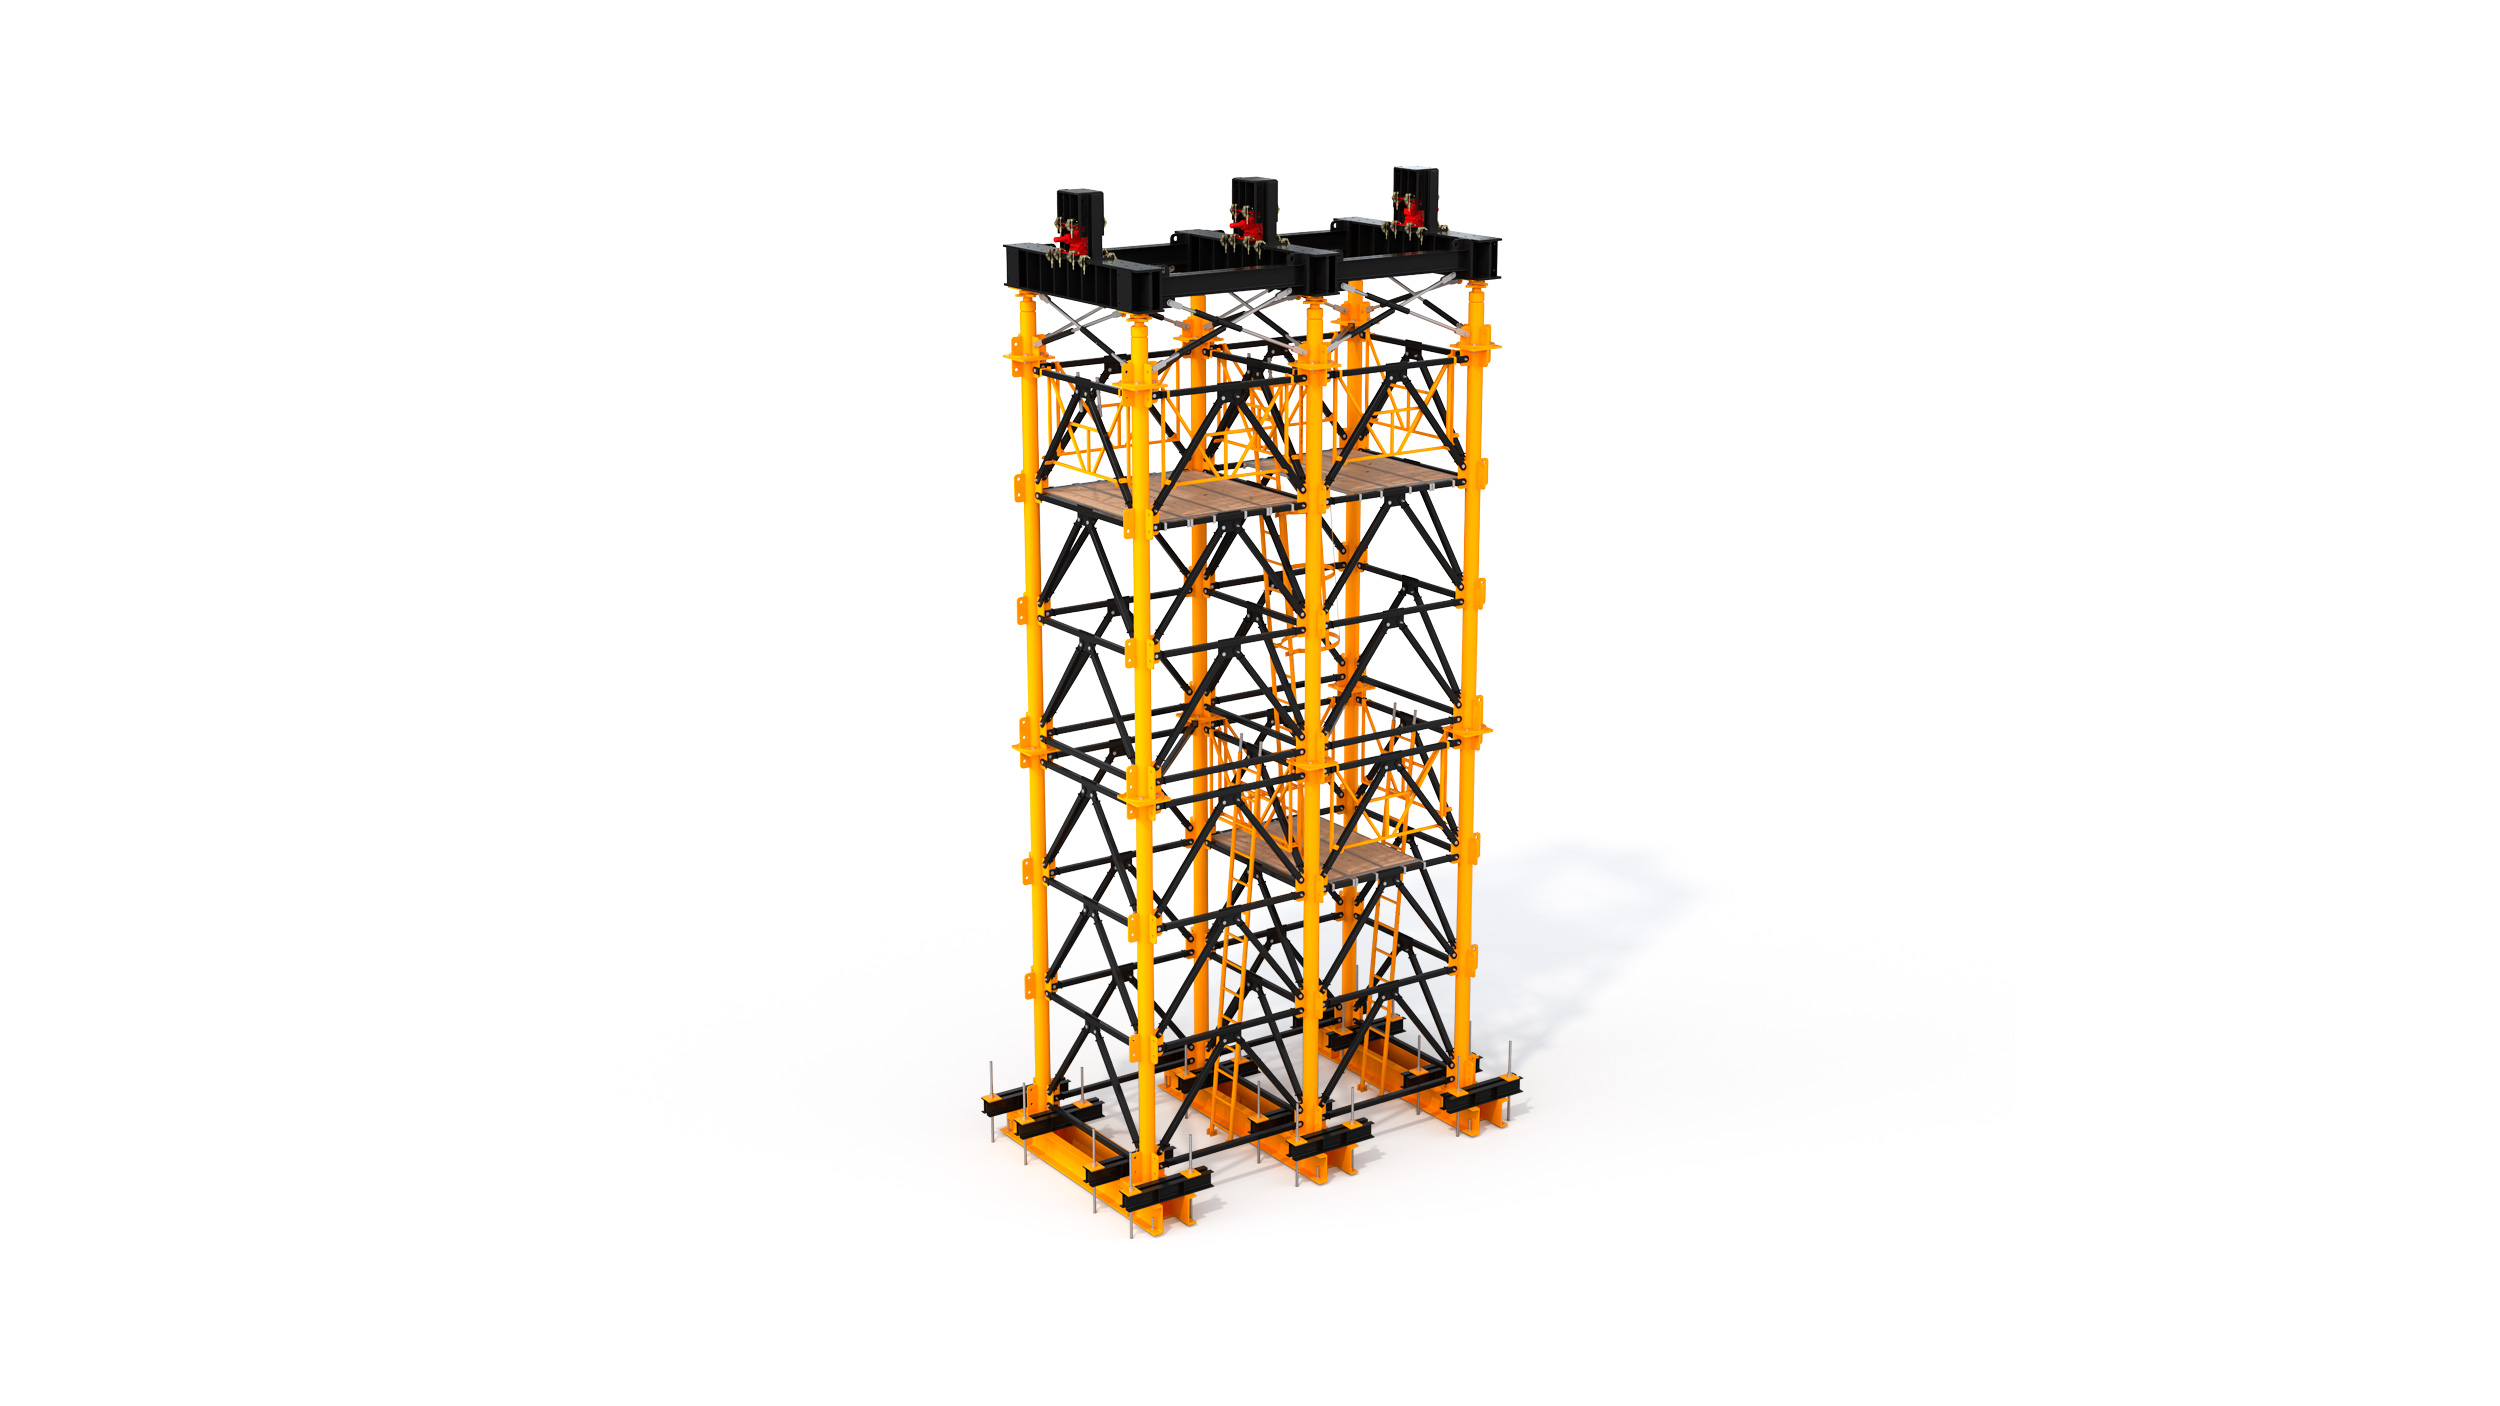 Ciężka wieża podporowa wykorzystywana głównie przy realizacji wysokich mostów i wiaduktów. Konstrukcja modułowa, prosty i bezpieczny montaż na budowie, łatwy transport.